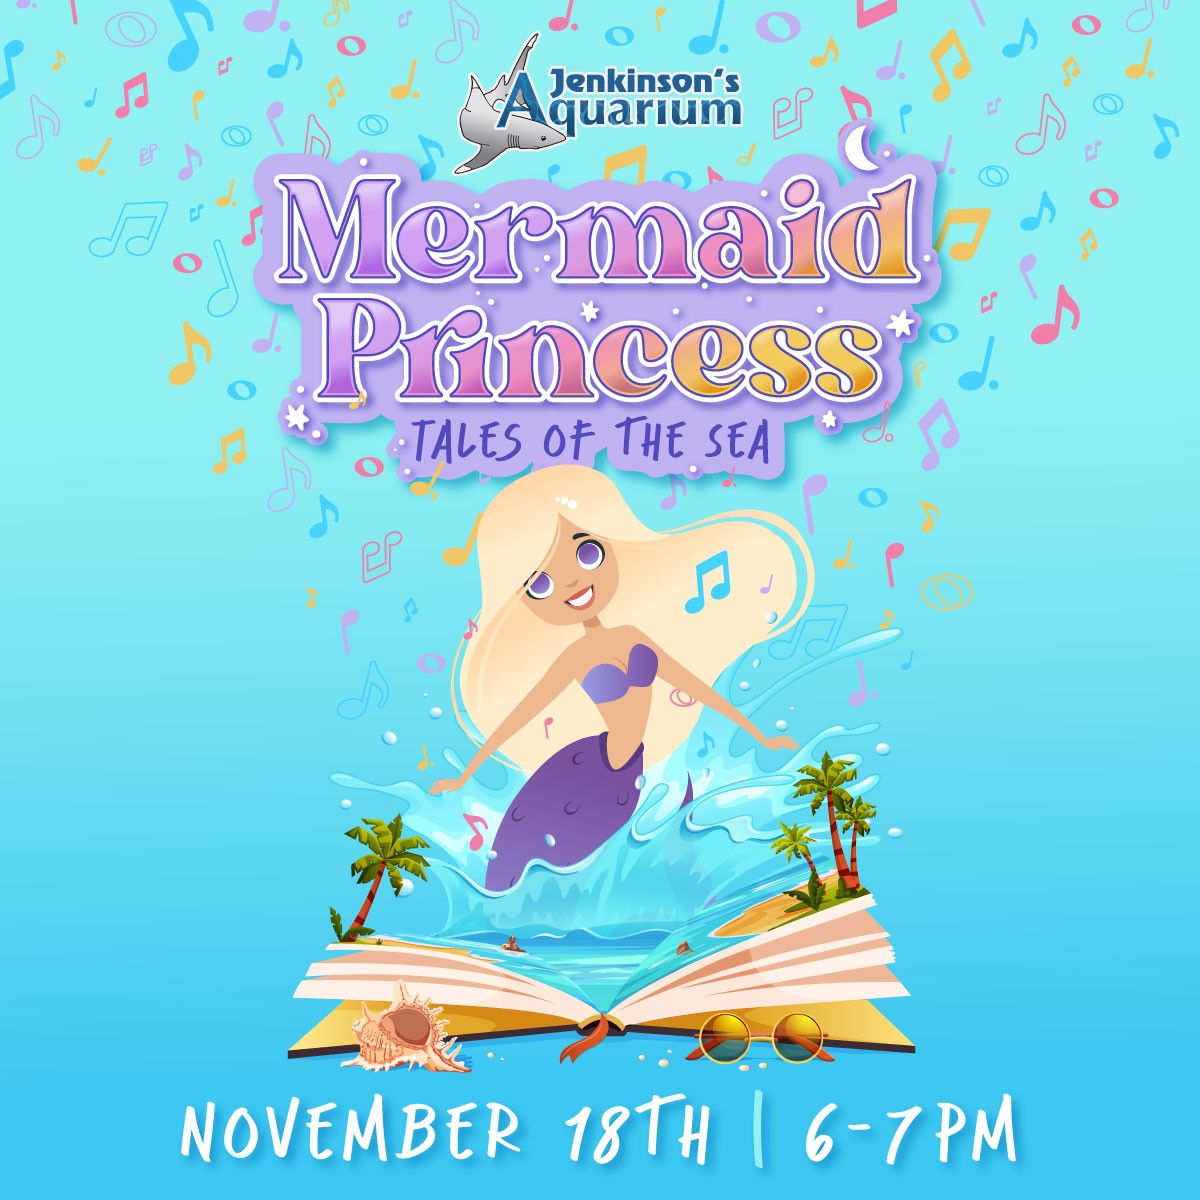 jenkinson's aquarium mermaid princess tales of the sea